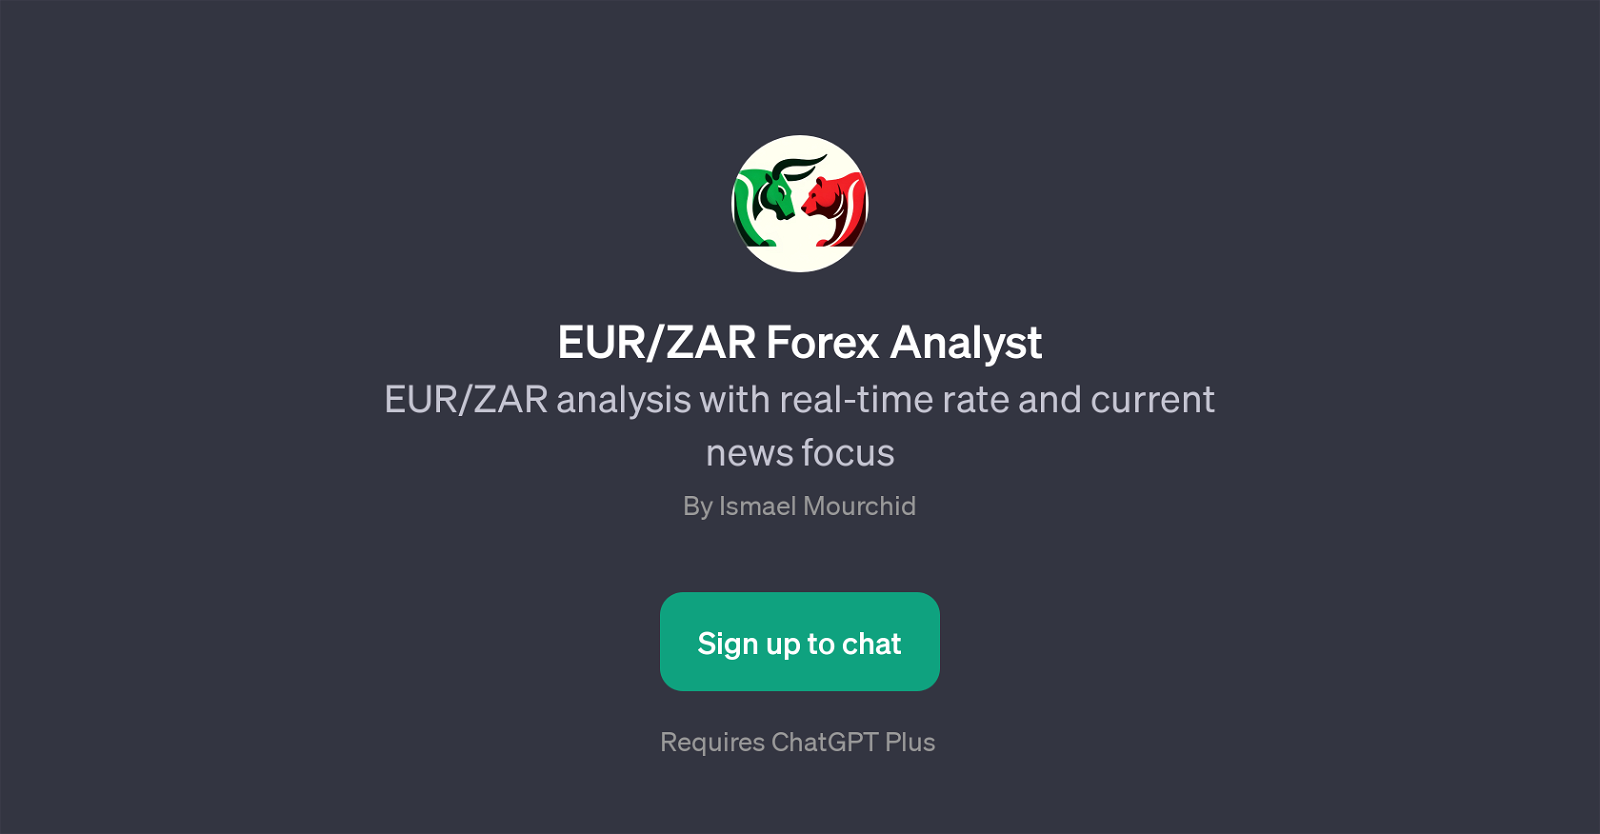 EUR/ZAR Forex Analyst website